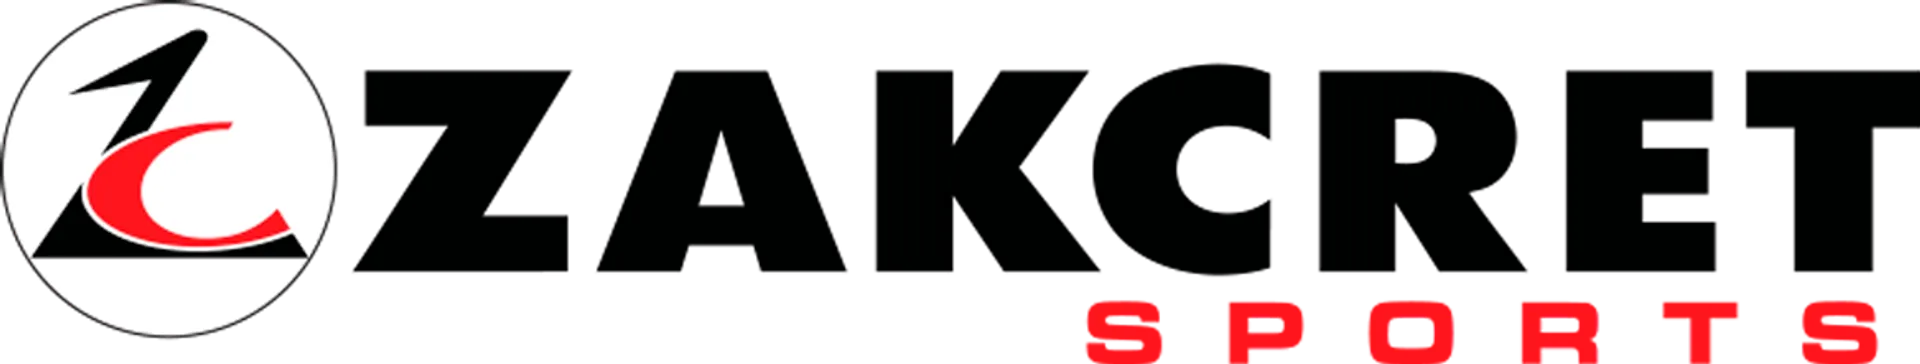 ZAKCRET logo